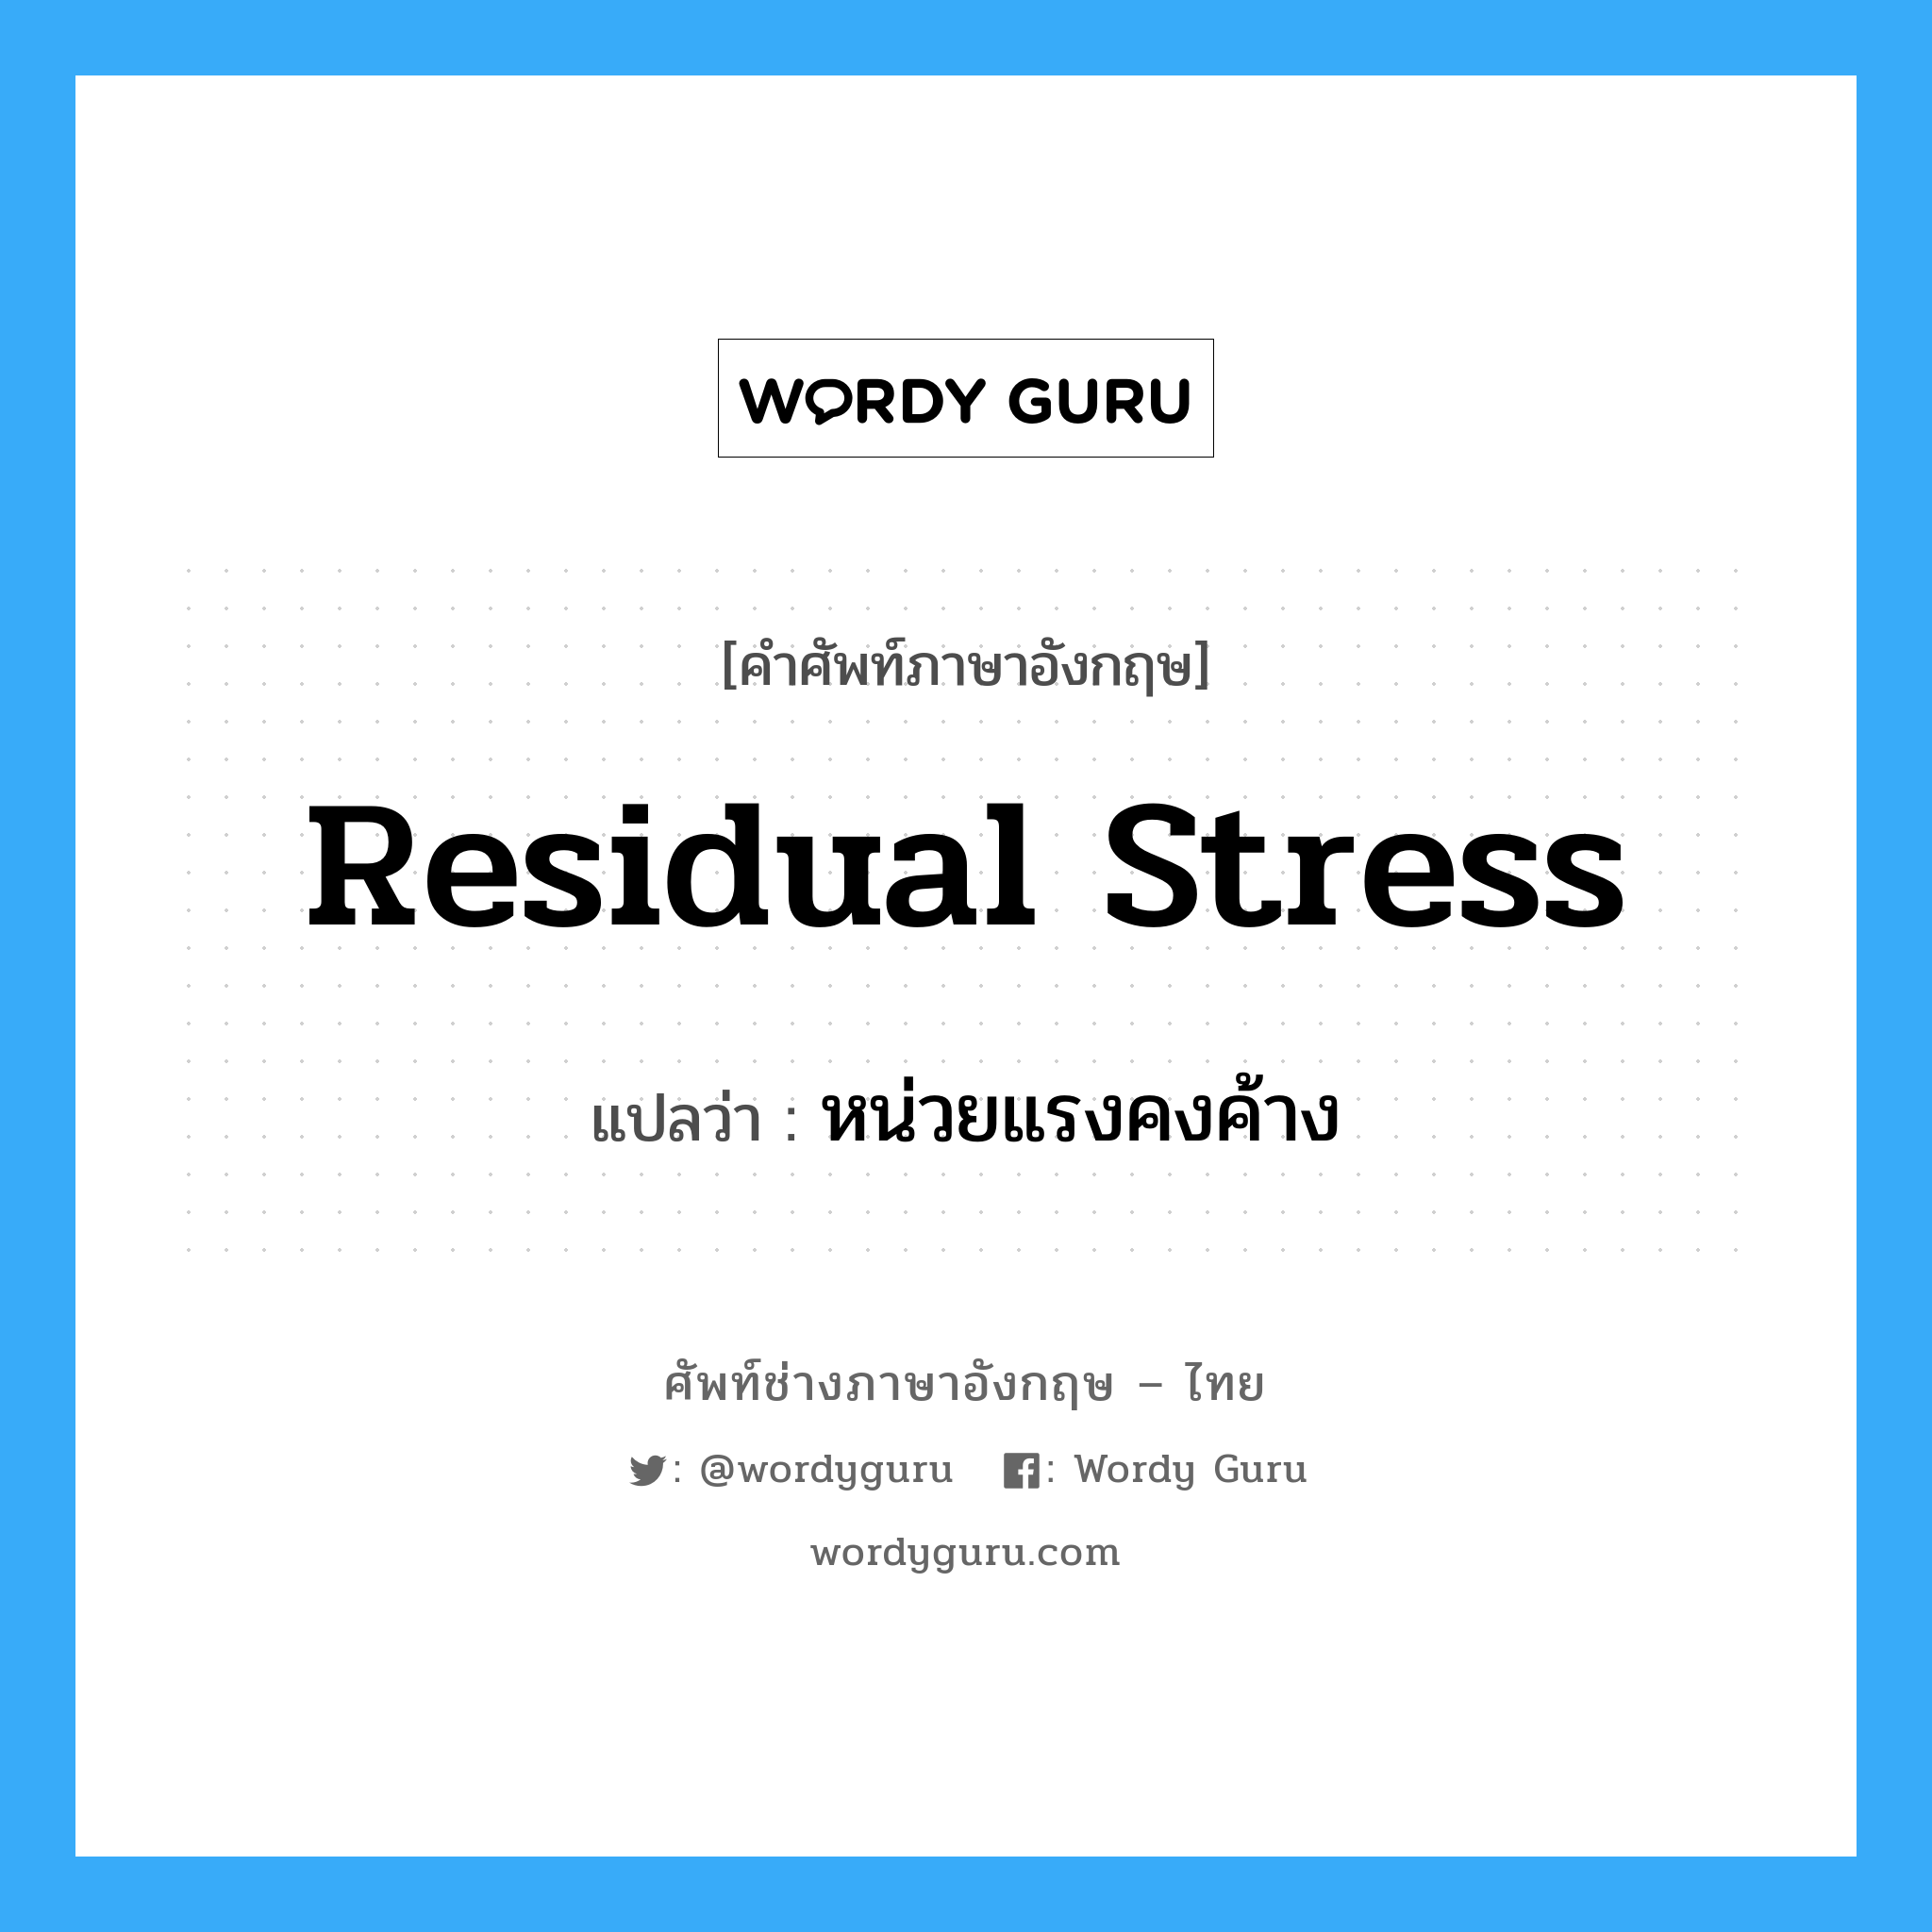 residual stress แปลว่า?, คำศัพท์ช่างภาษาอังกฤษ - ไทย residual stress คำศัพท์ภาษาอังกฤษ residual stress แปลว่า หน่วยแรงคงค้าง